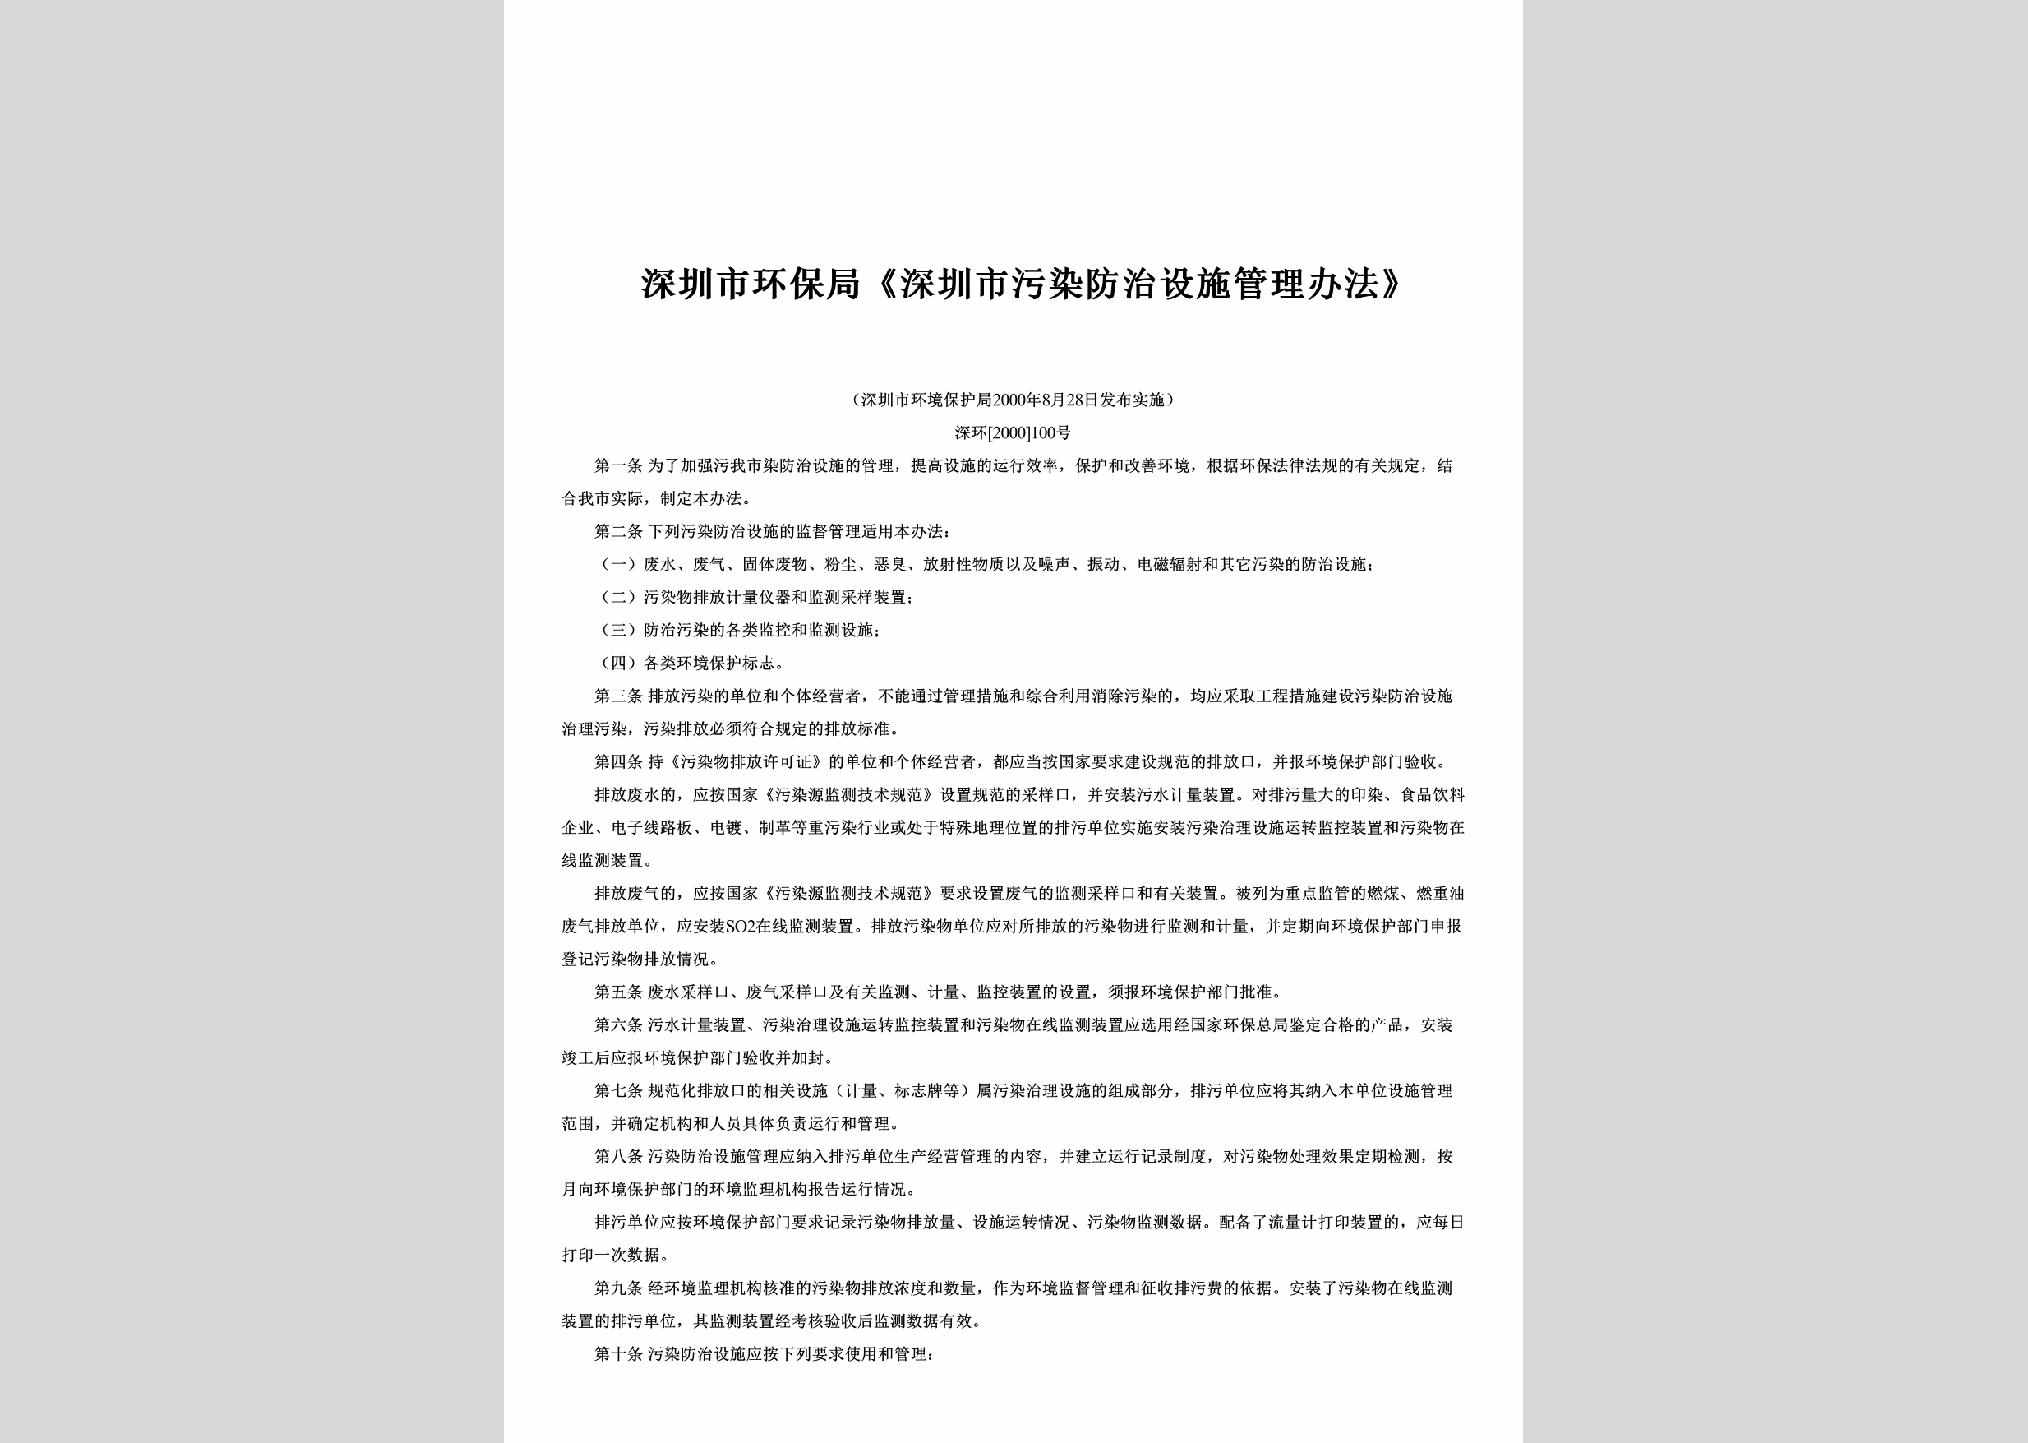 深环[2000]100号：《深圳市污染防治设施管理办法》